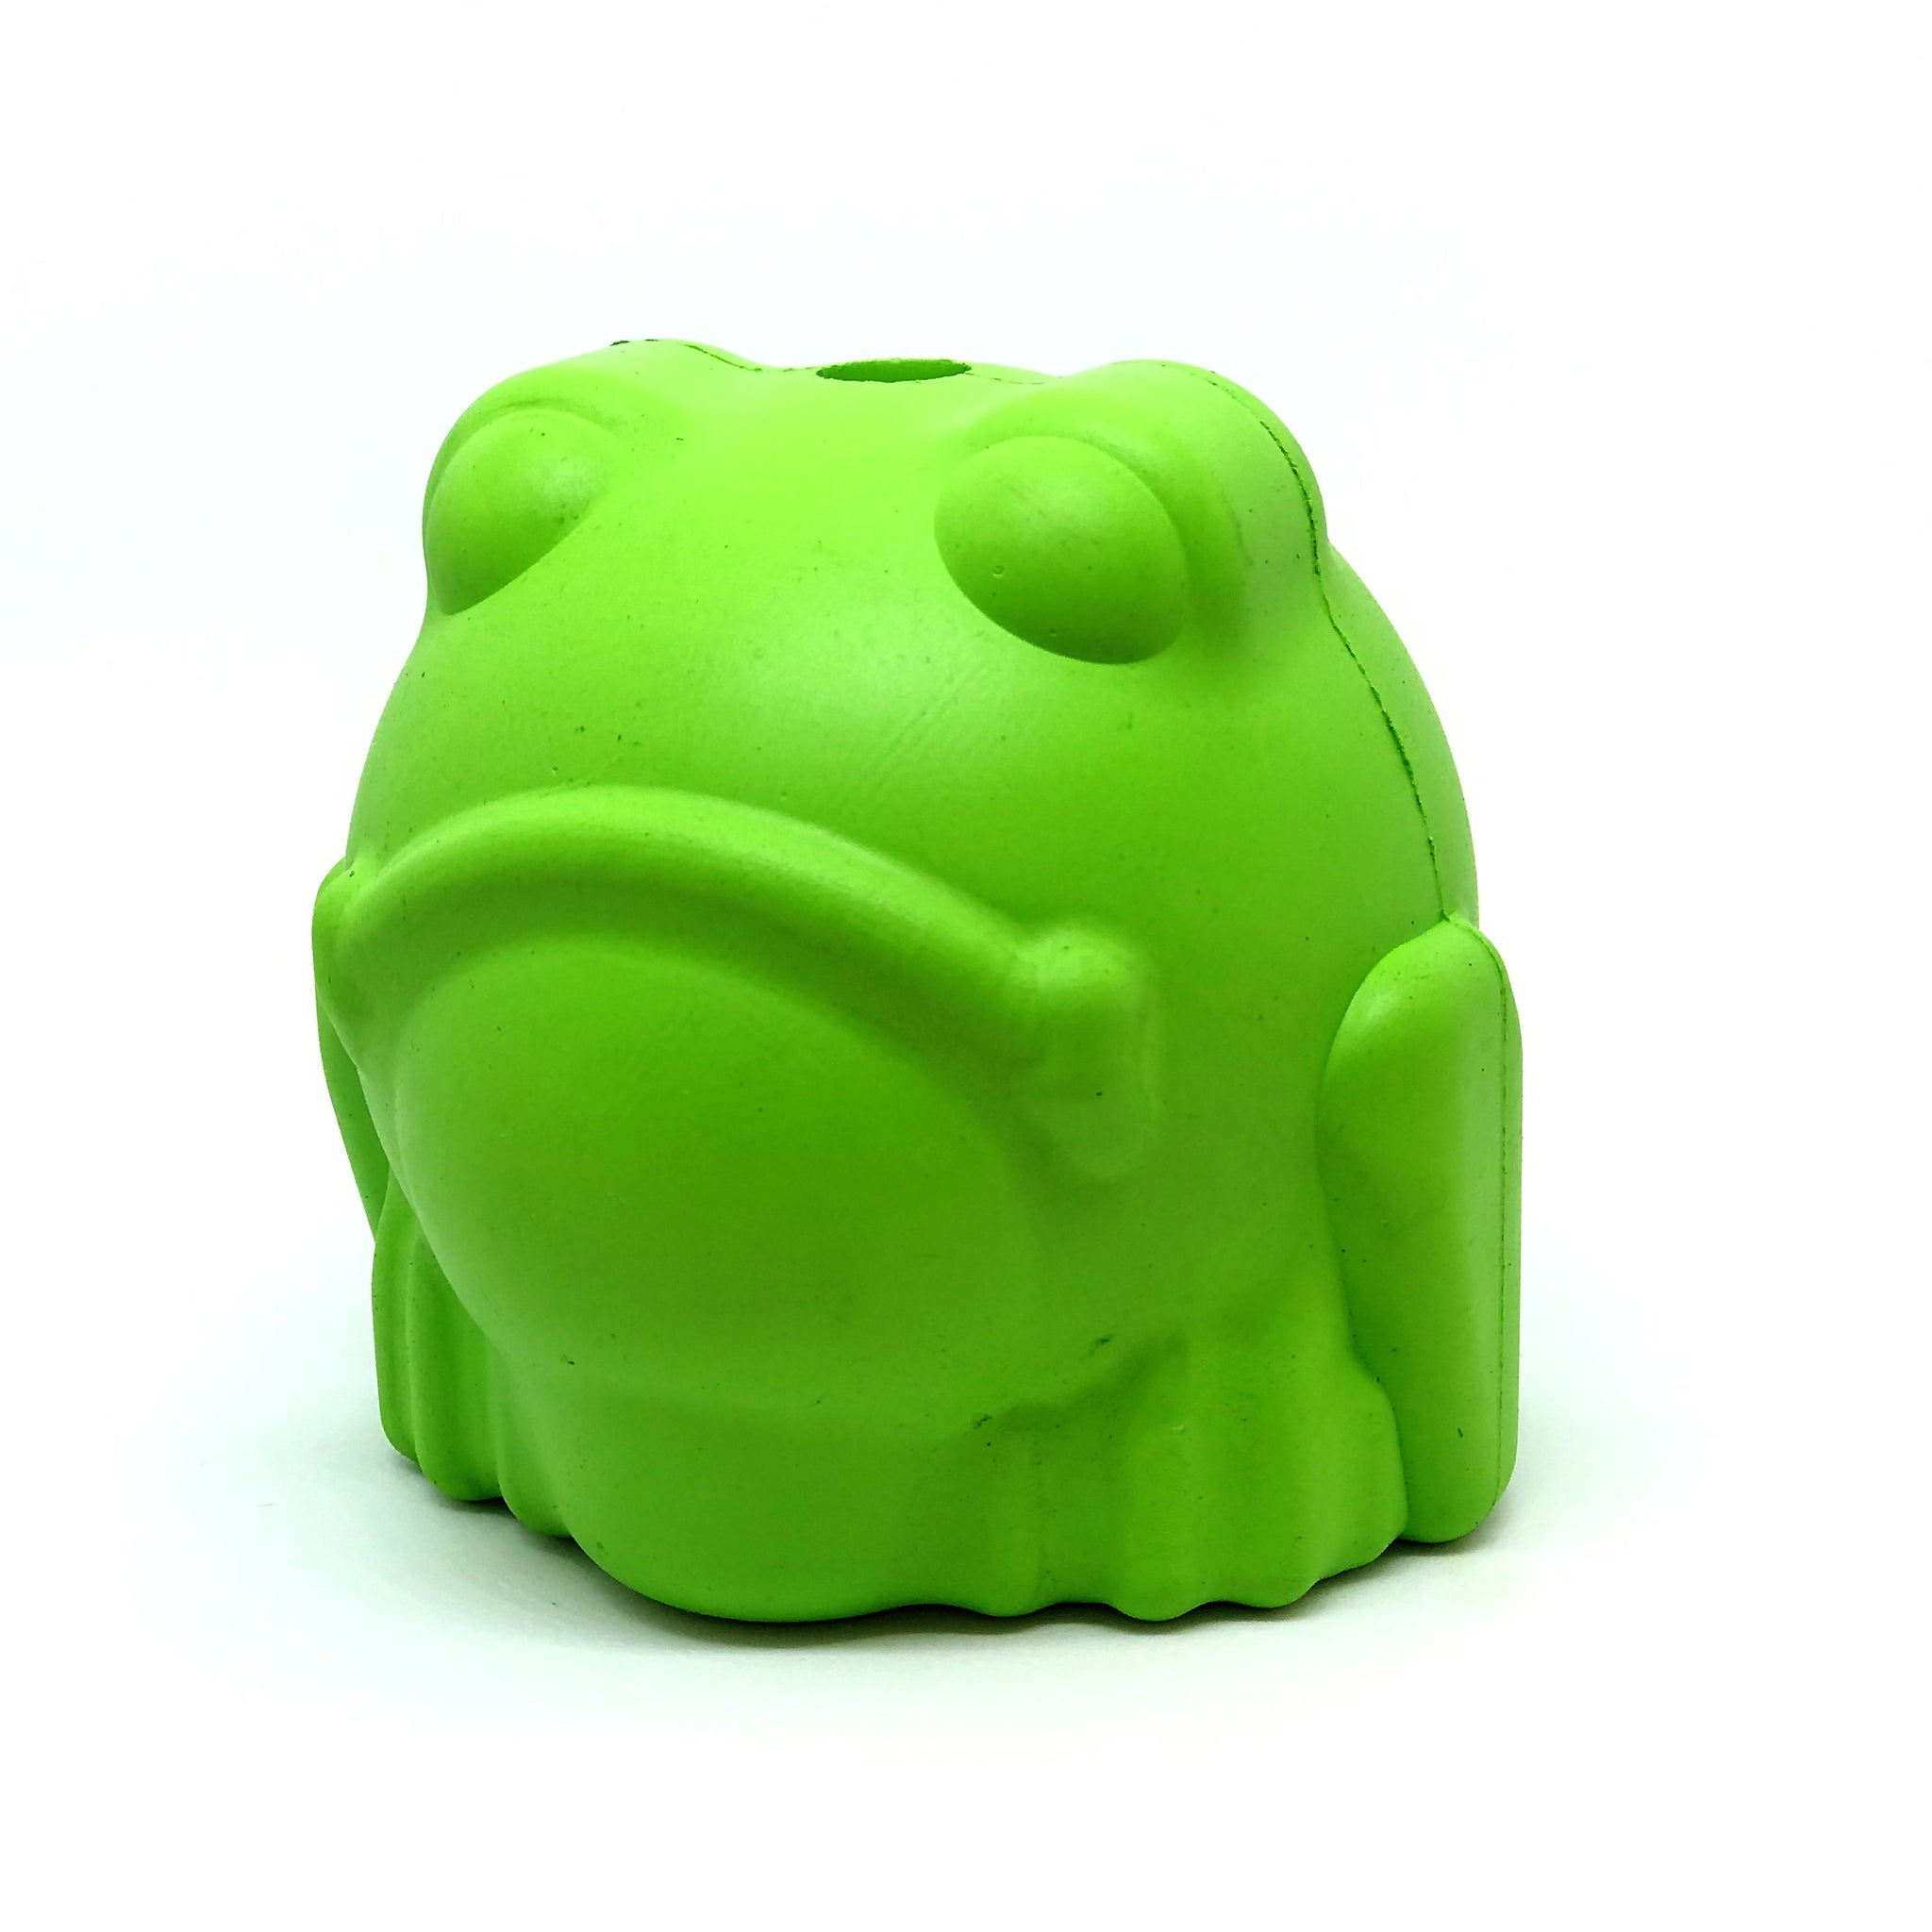 SODAPUP Bull Frog Treat Dispenser Toy